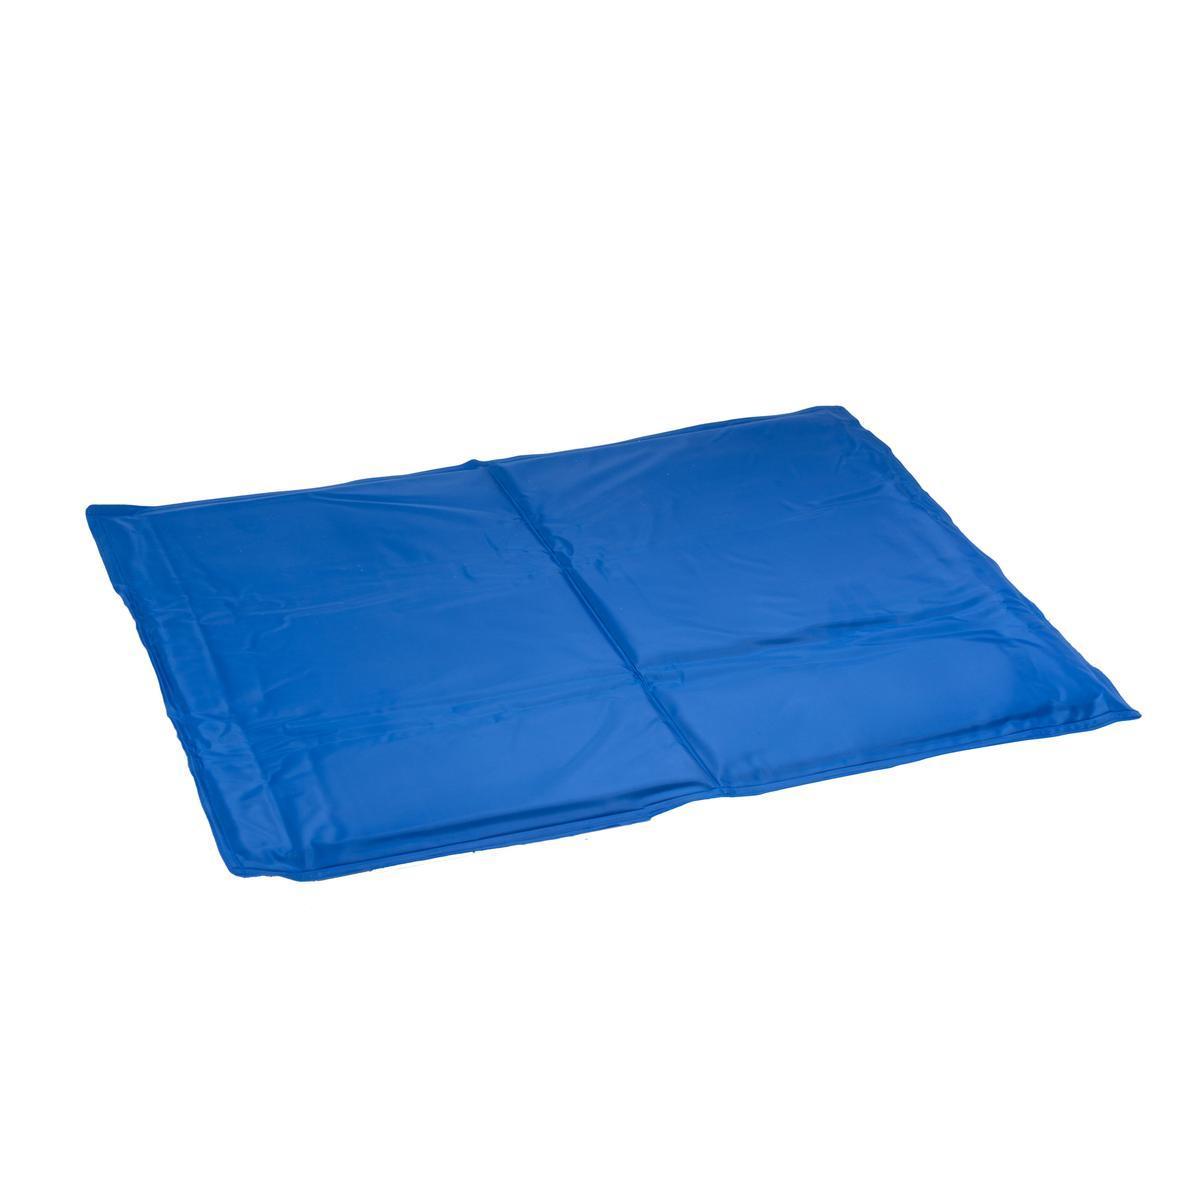 Tapis rafraichissant pour chien - 70 x 50 cm (Taille M) - Bleu